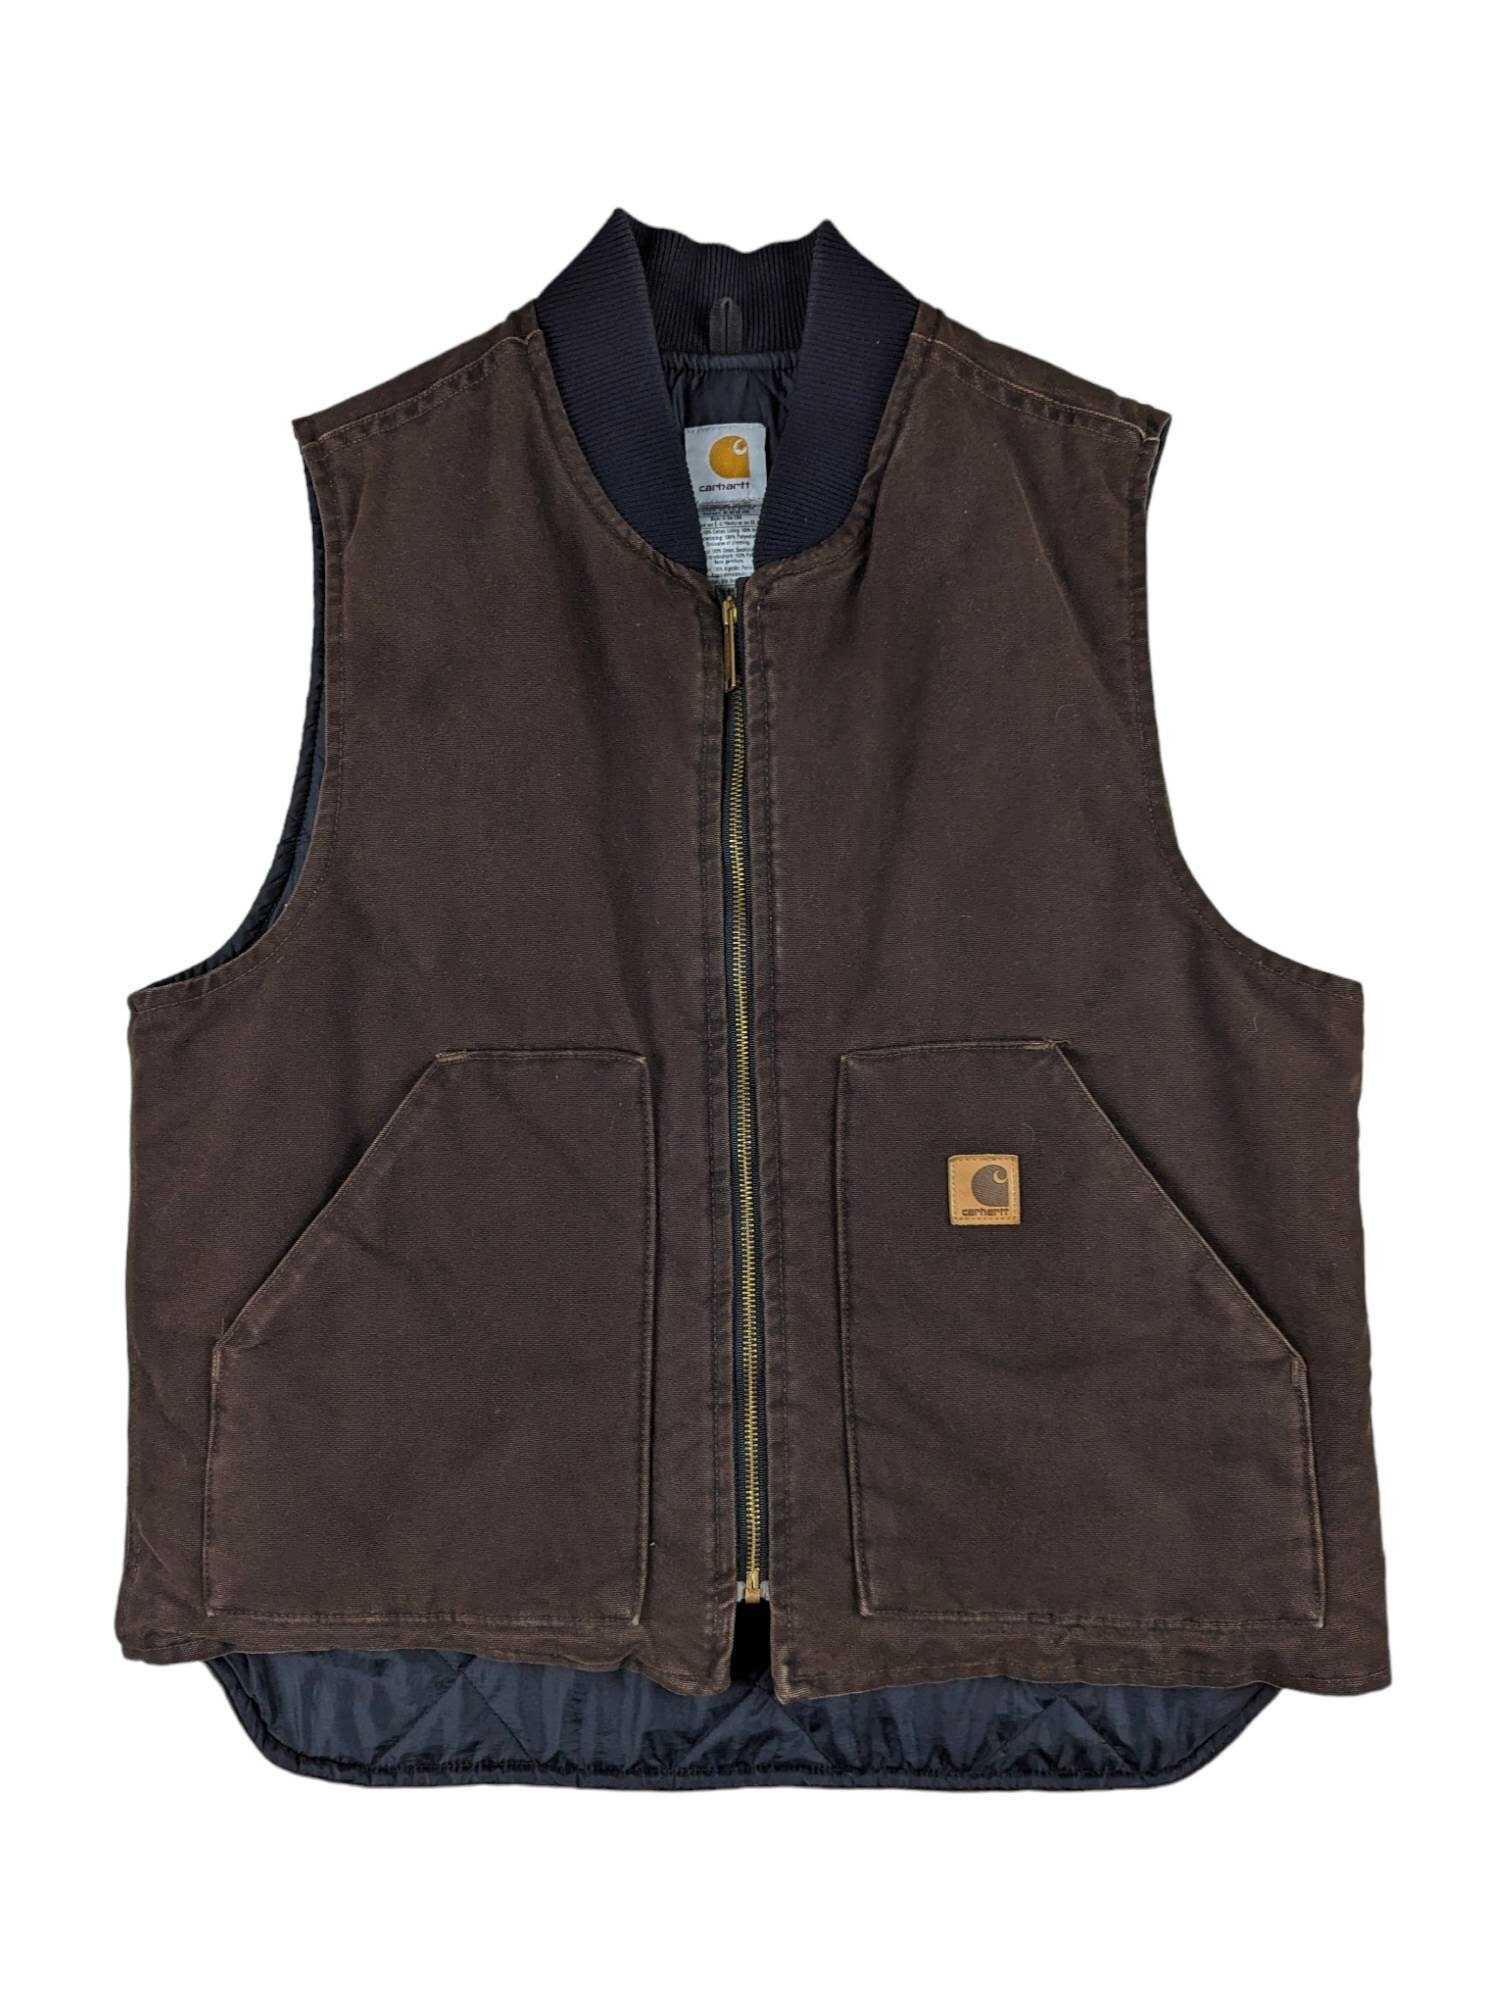 Artic Vest Canvas Brown - Black & Blue Shop